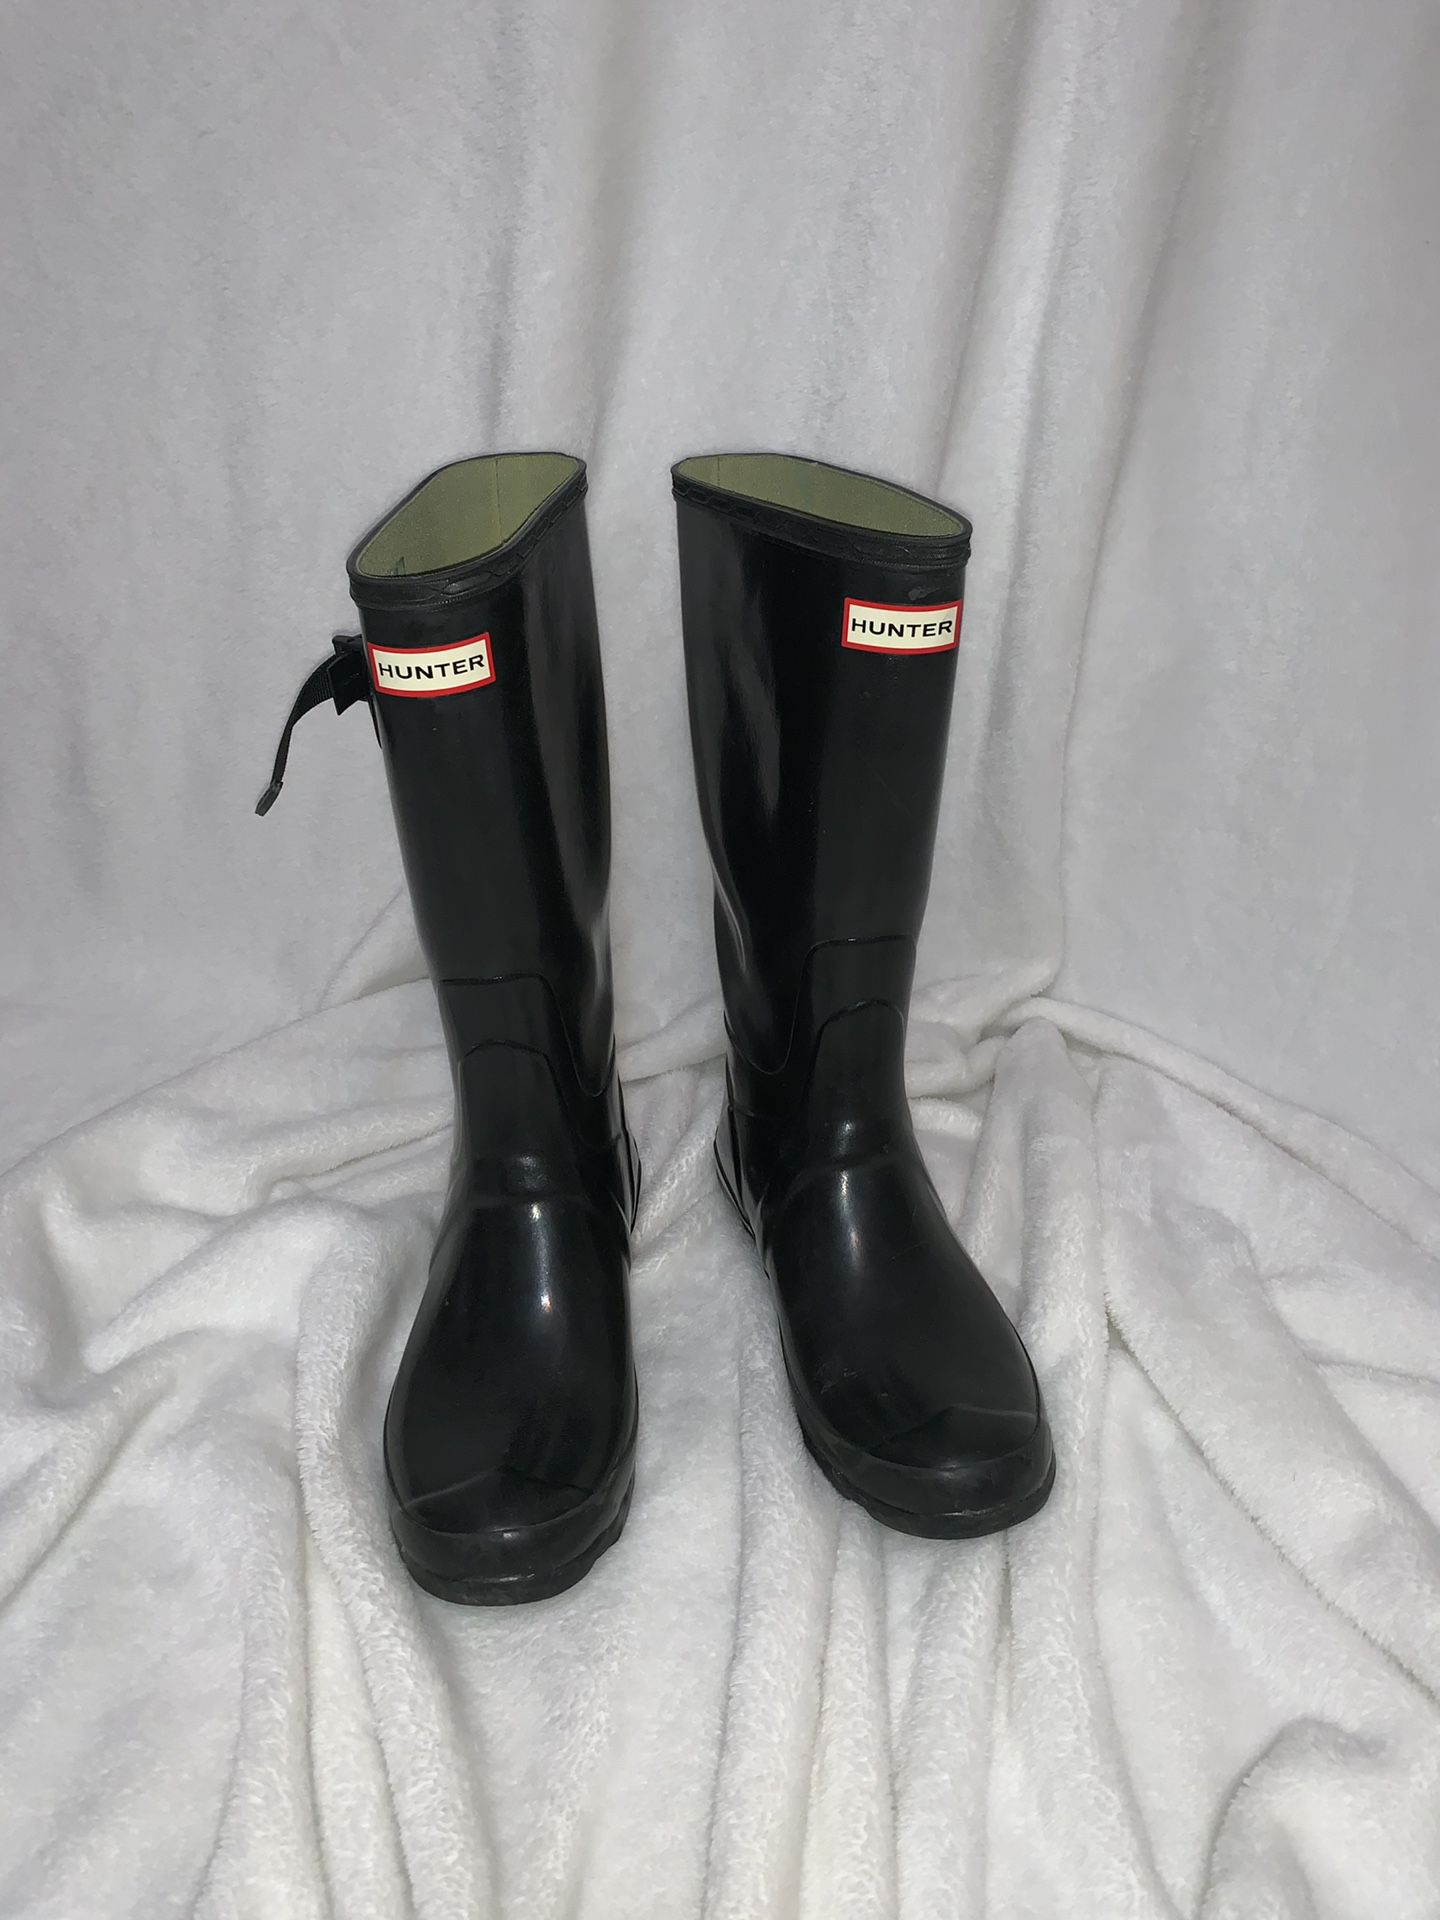 Hunter Rain Boots size 9 women’s